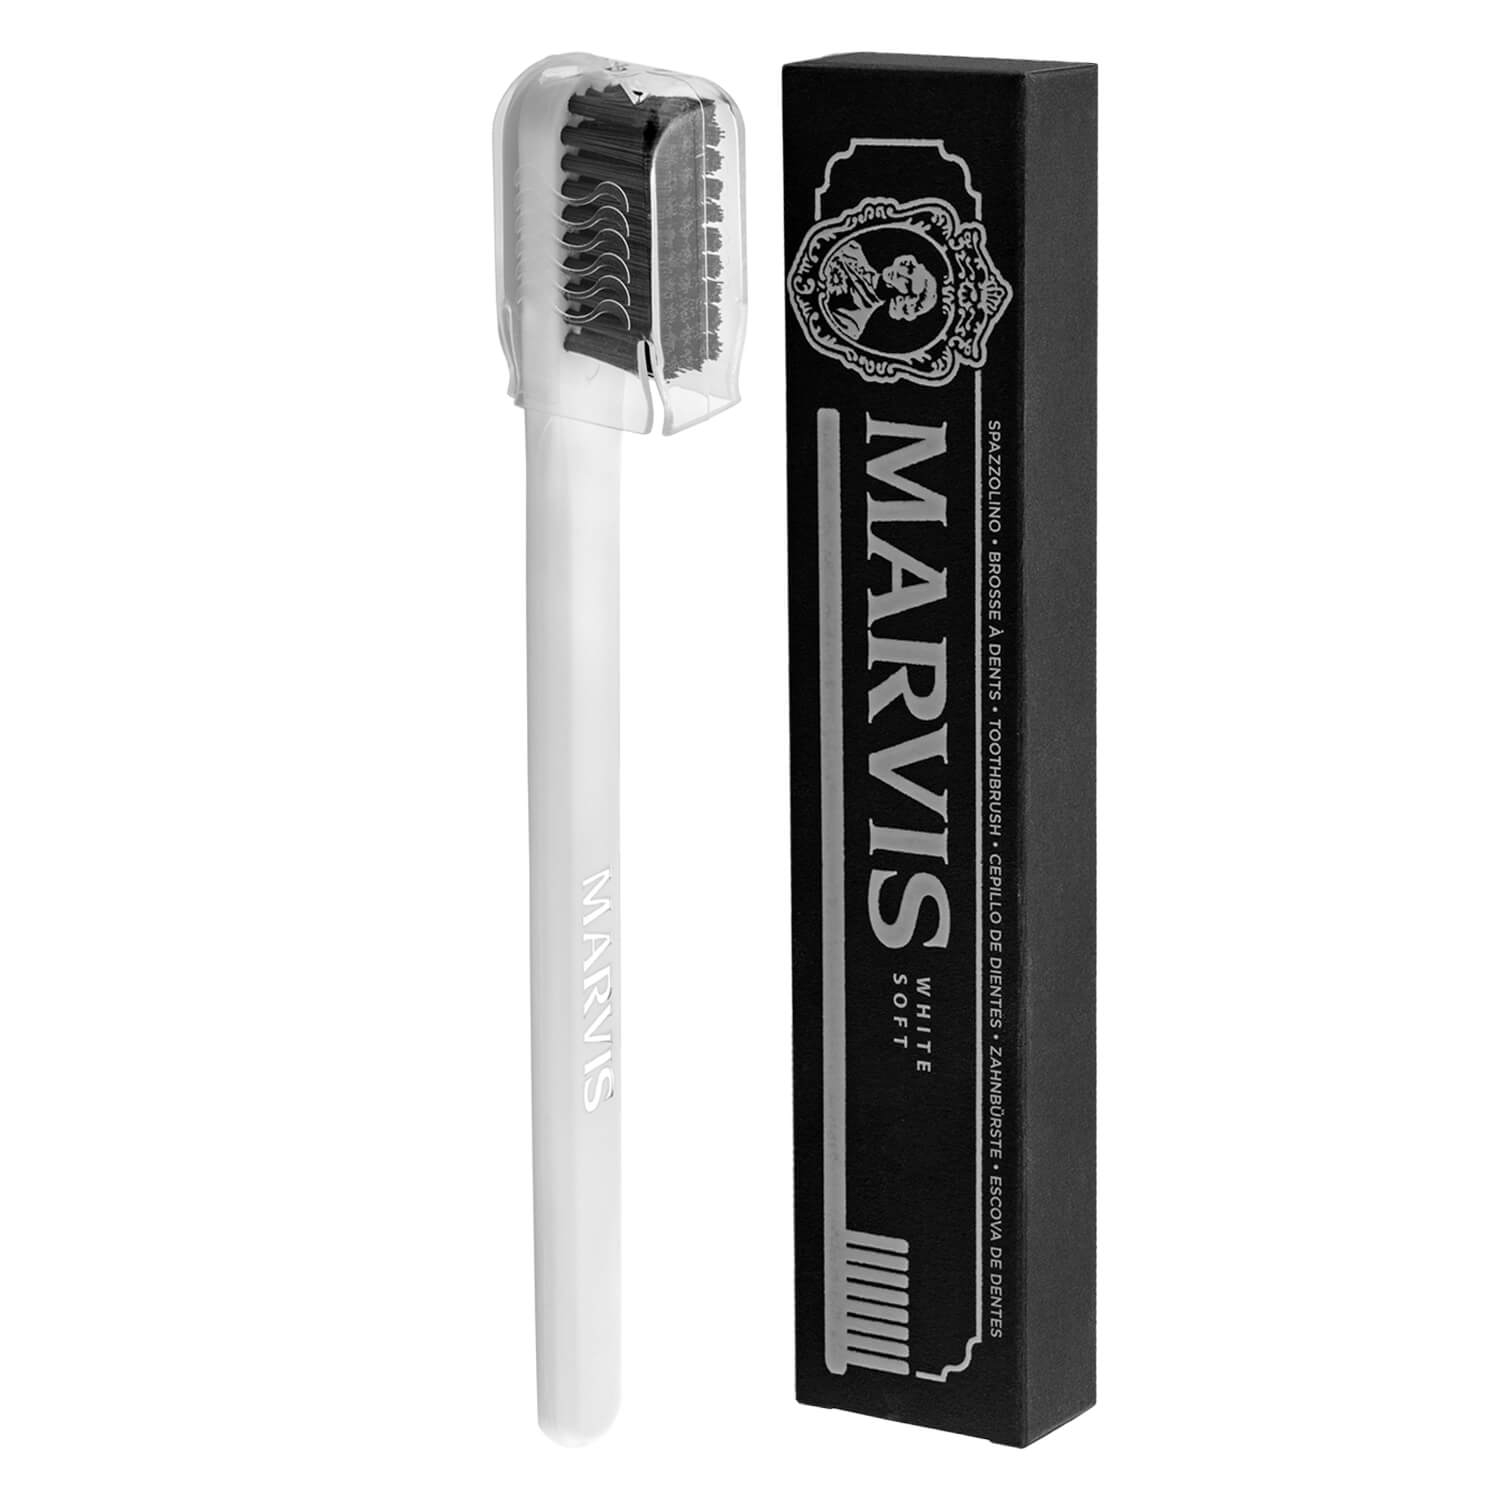 Produktbild von Marvis - Toothbrush White